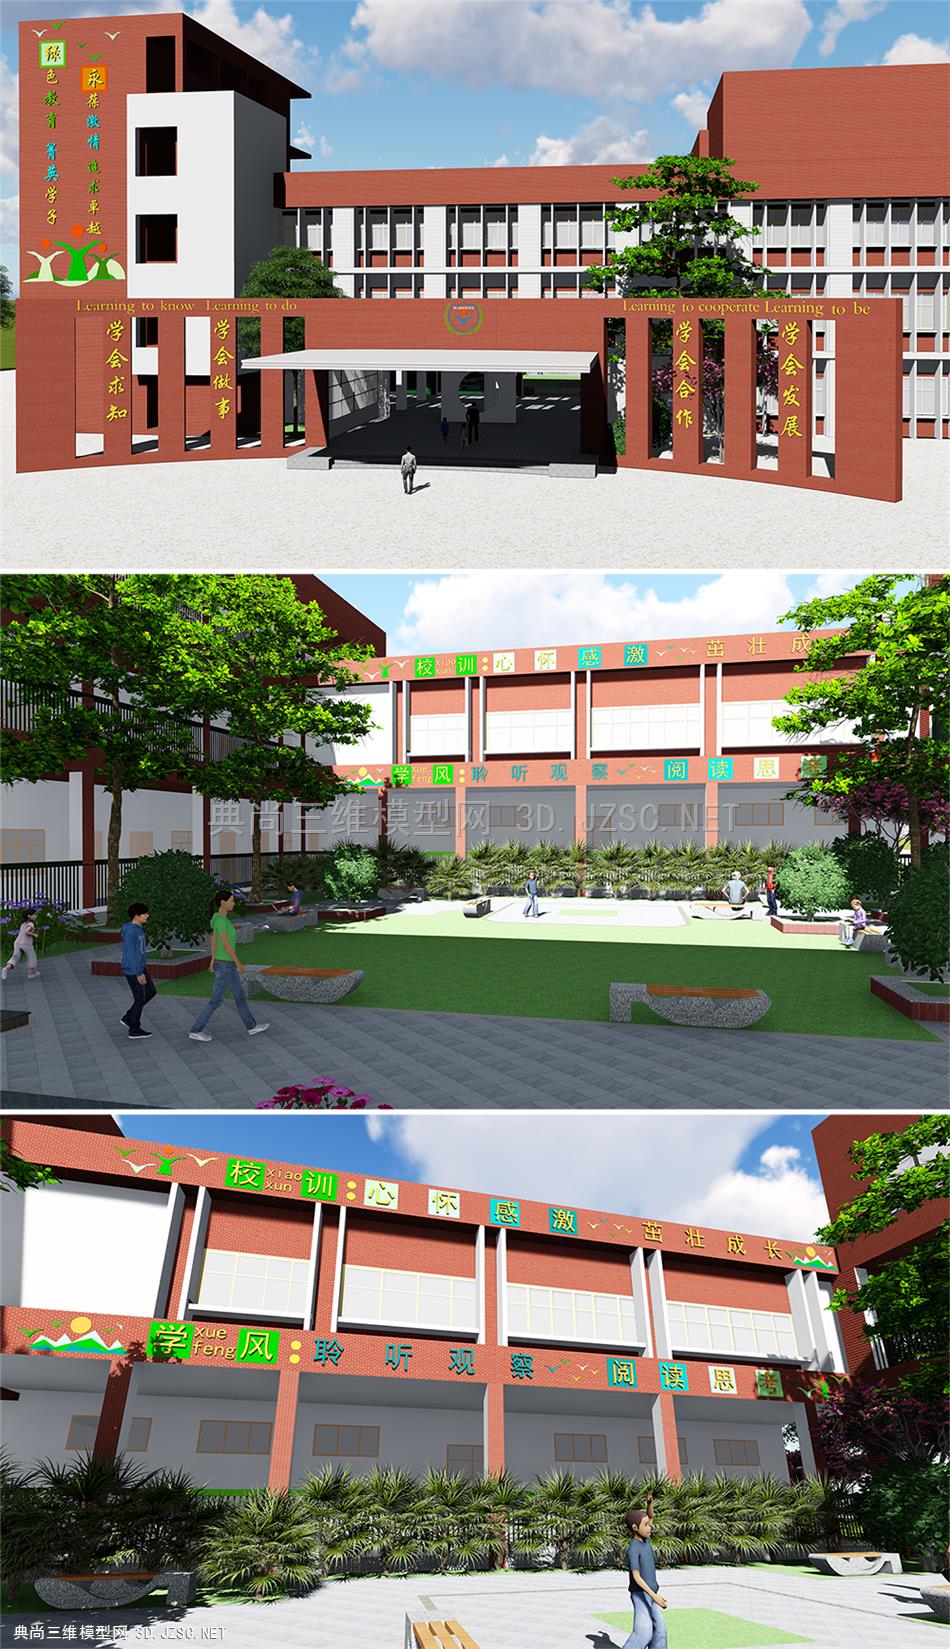 某碧桂园学校建筑入口中庭景观模型